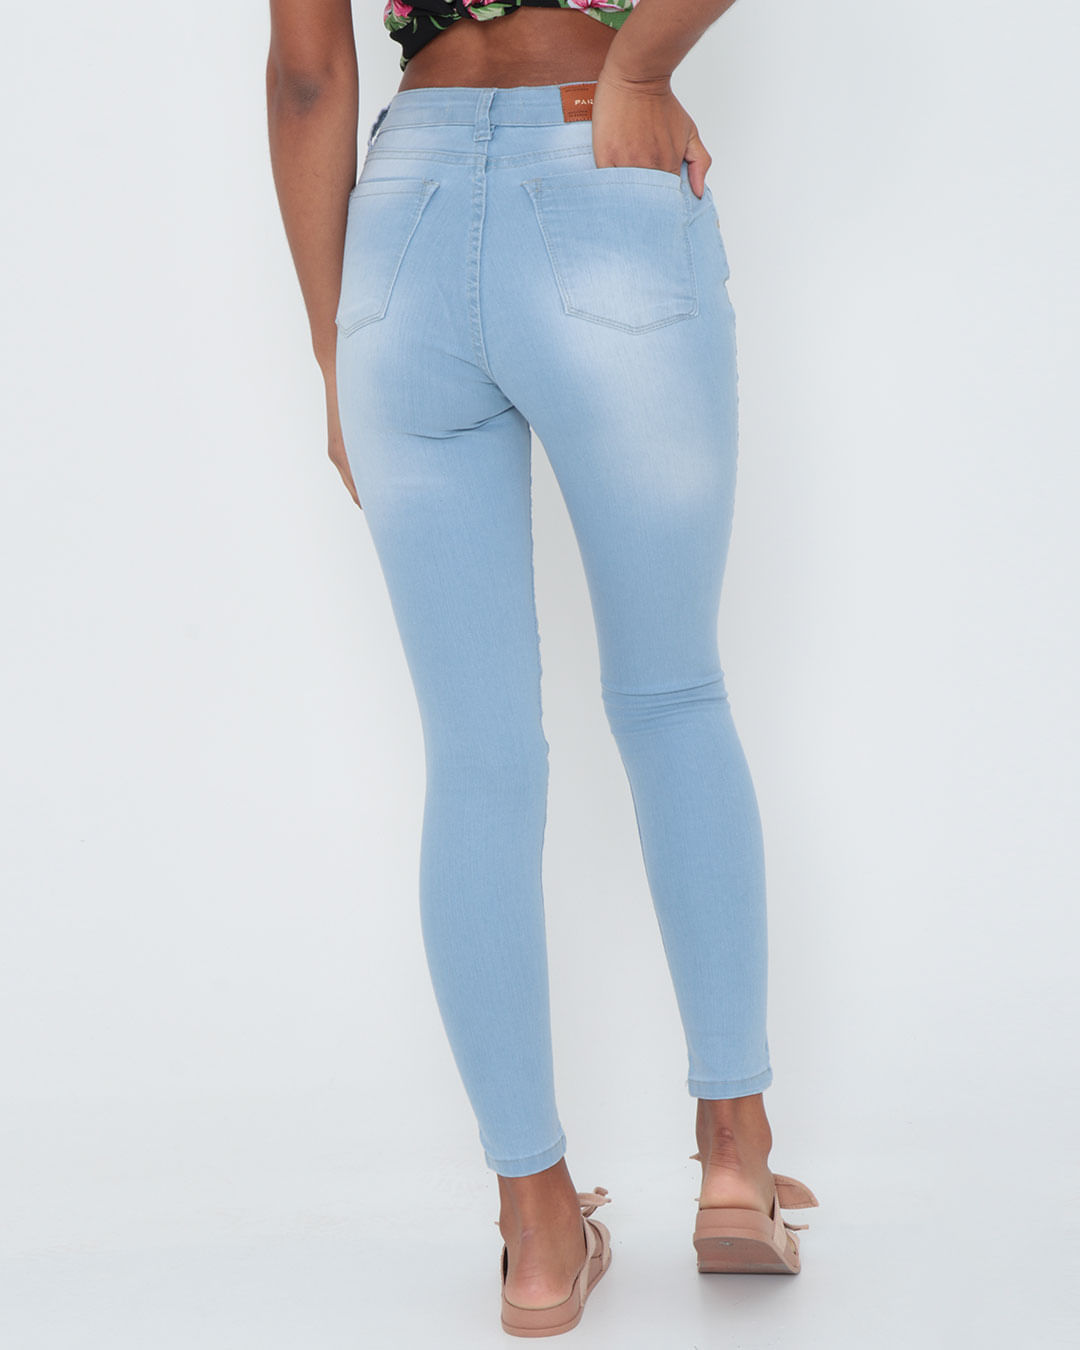 Calca-Jeans-Feminina-Skinny-Azul-Claro